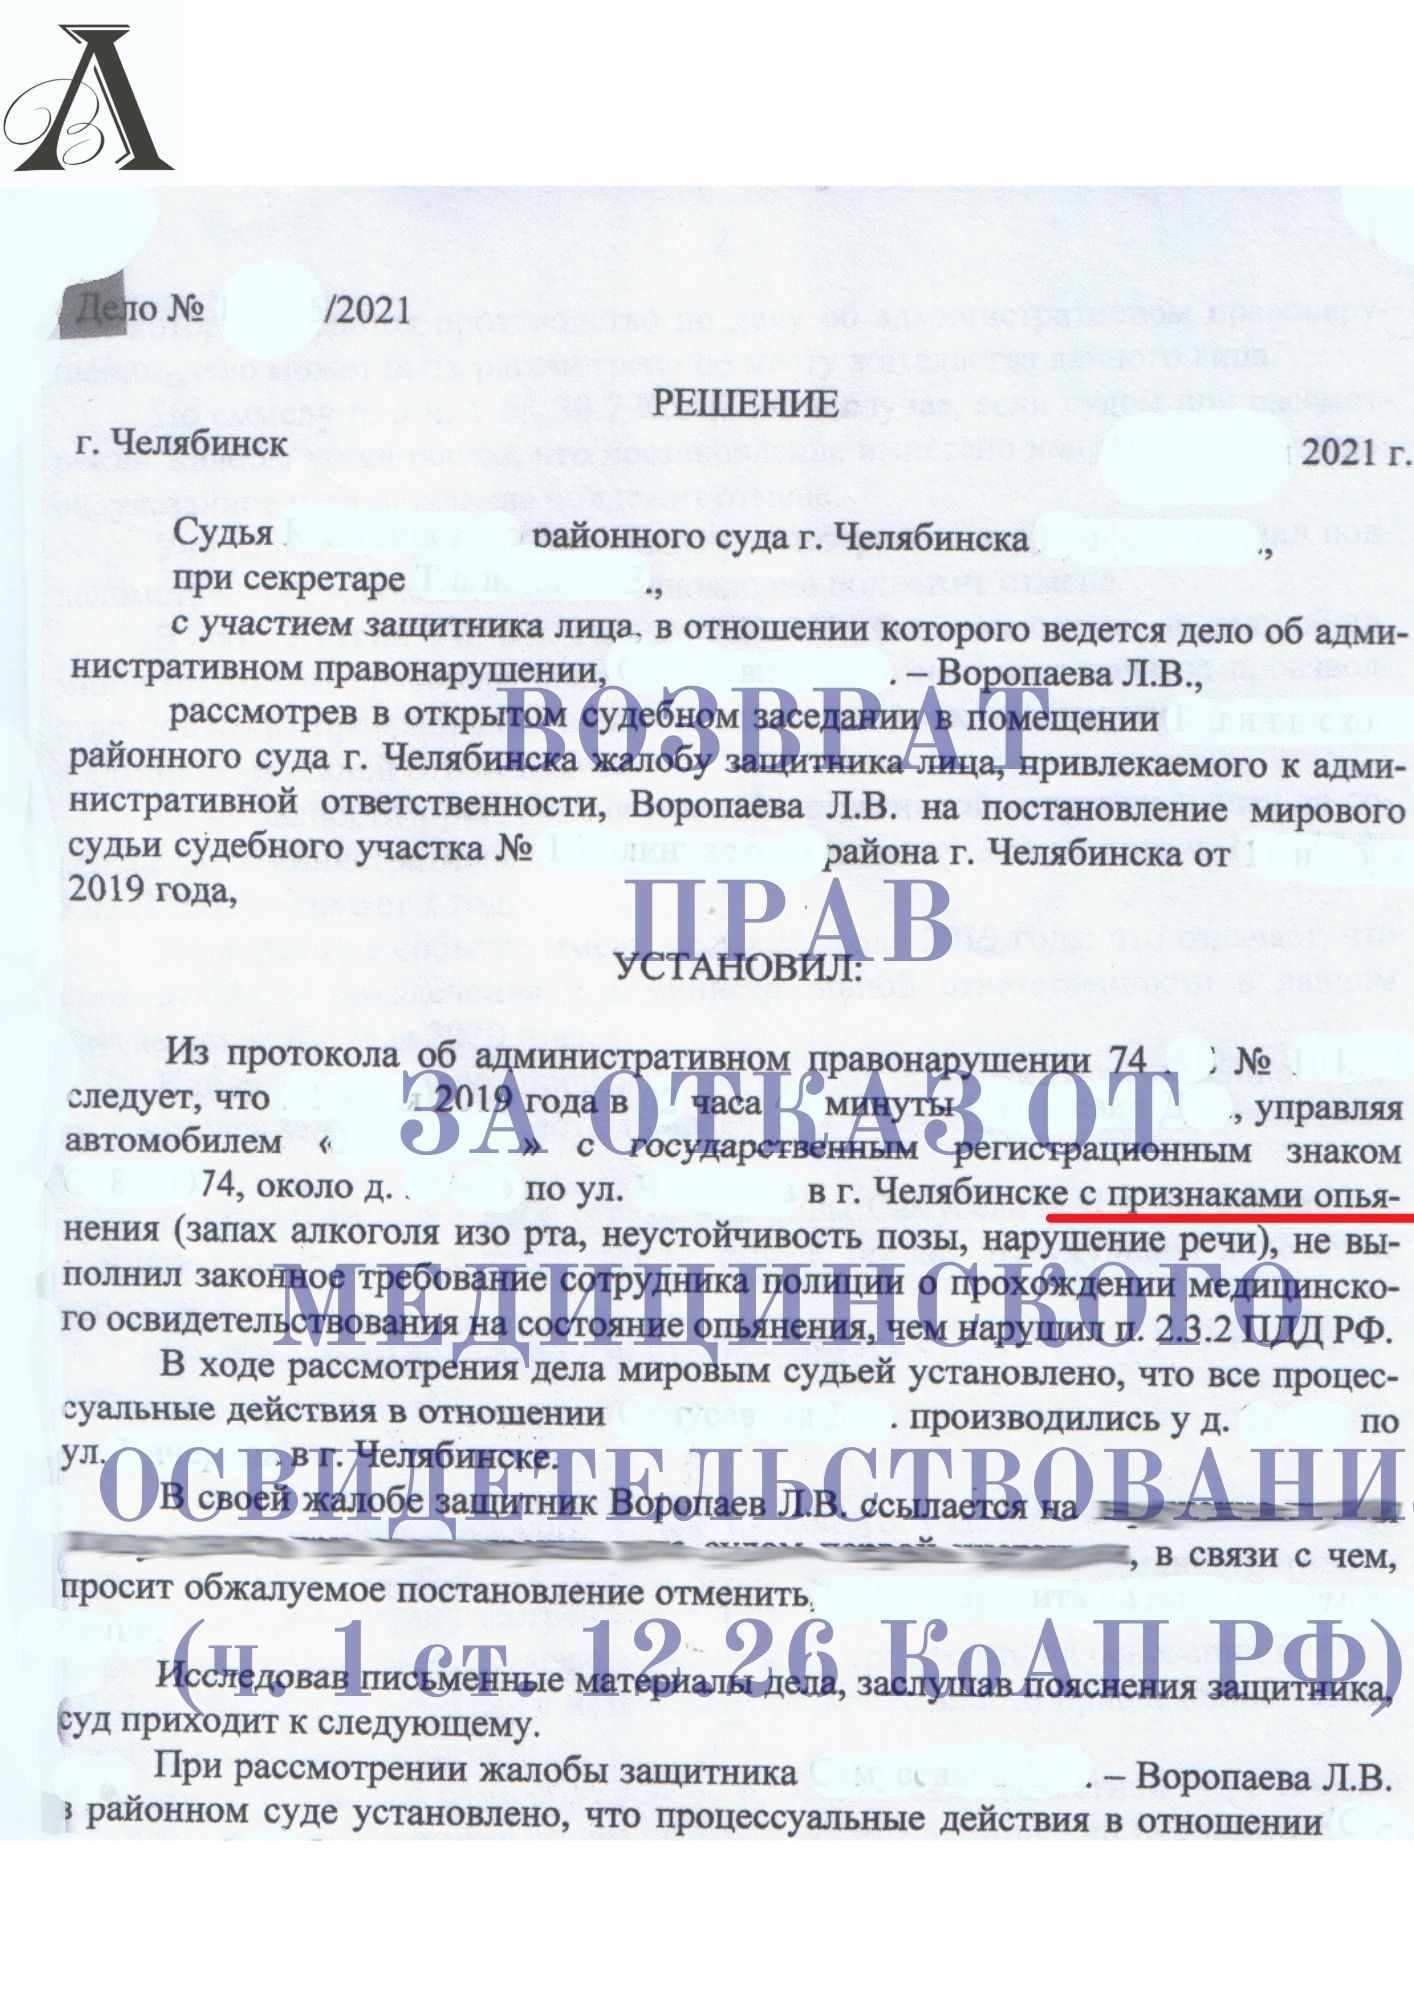 Вернули права за отказ от прохождения медицинского освидетельствования (ч.1 ст. 12.26 КоАП РФ)